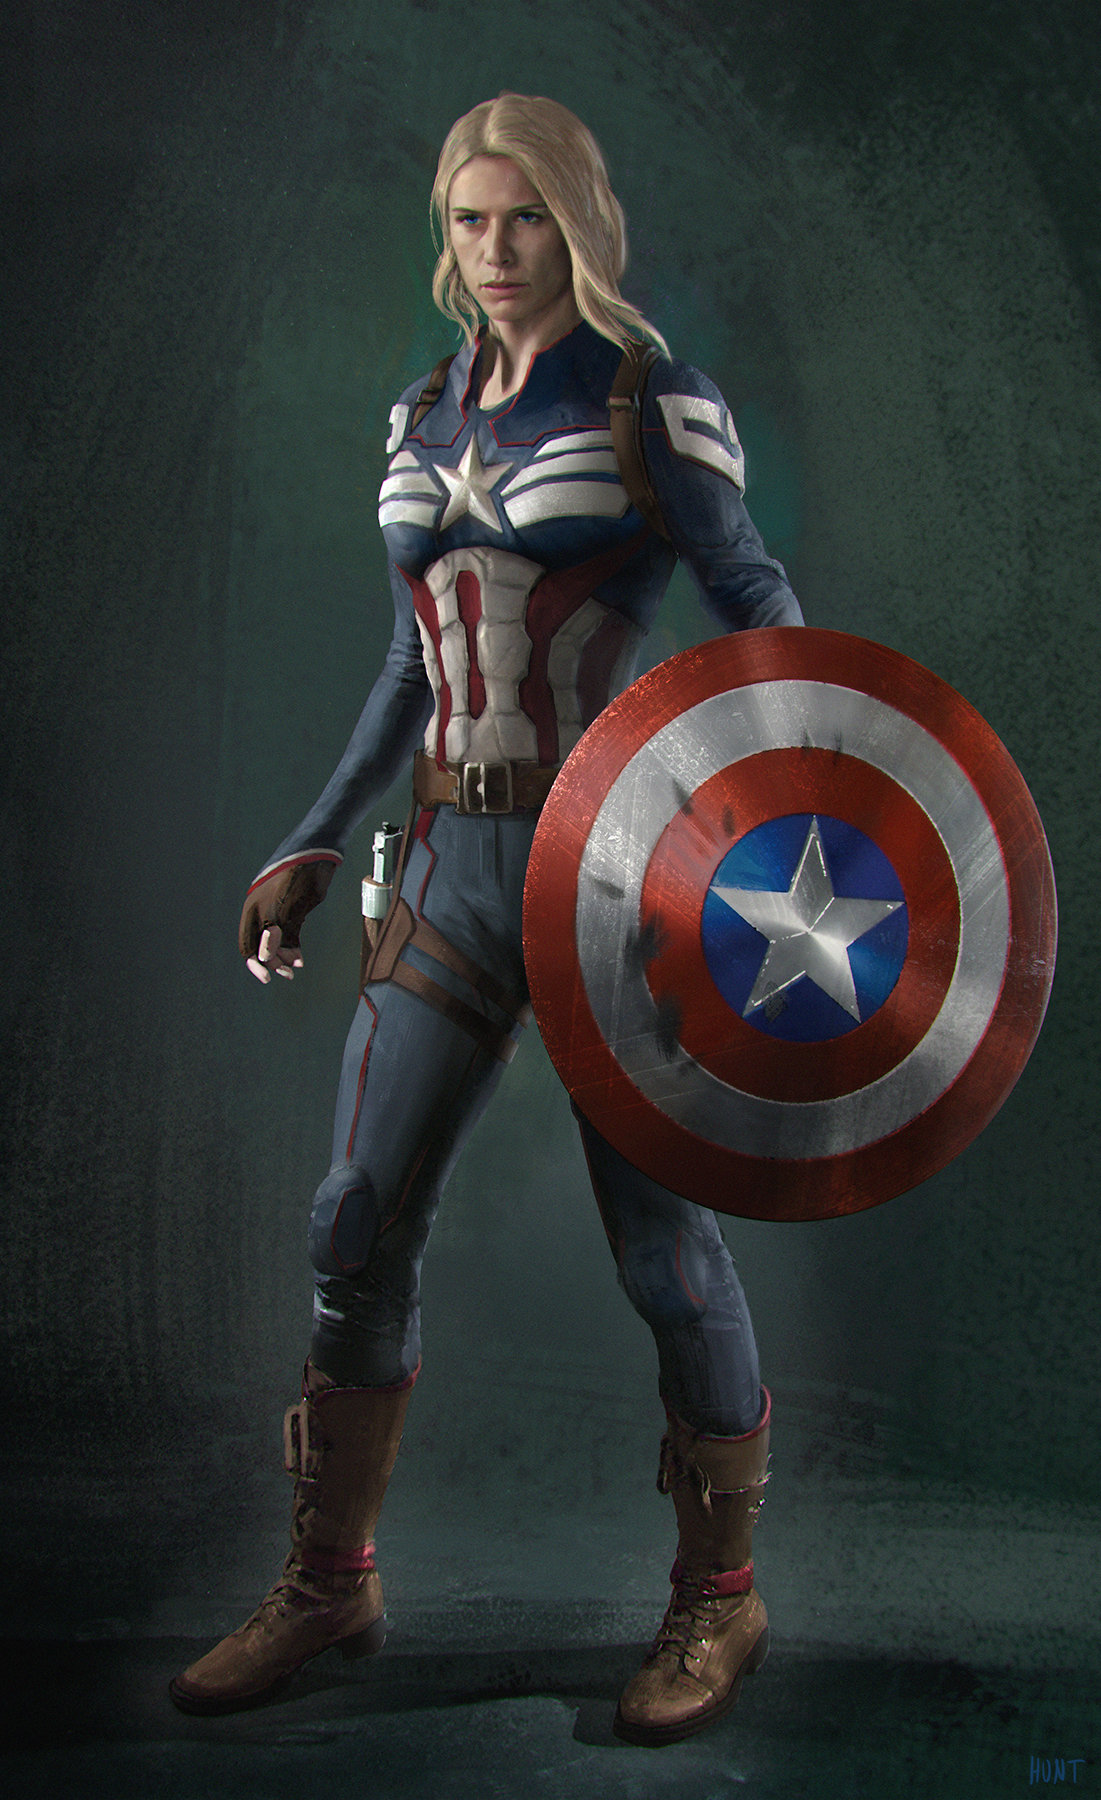 ArtStation - Captain America character design sheet, Andrew Hunt